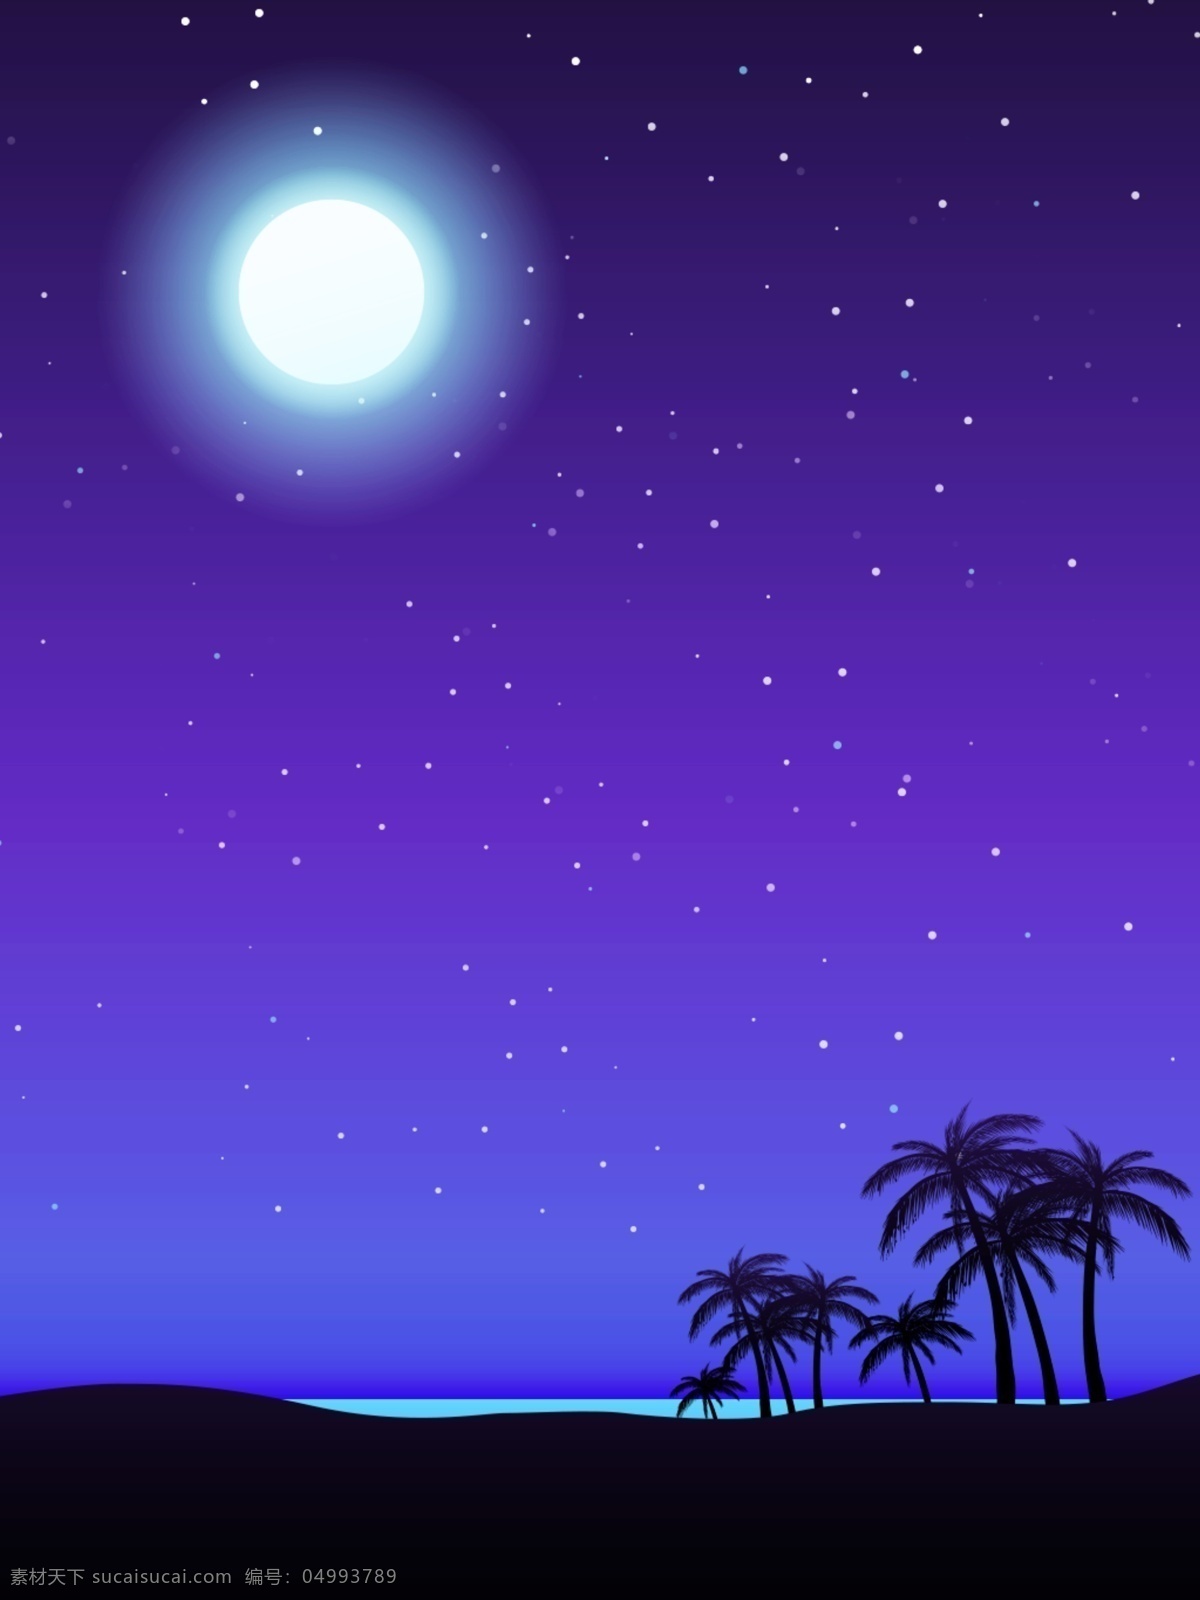 蓝色 夜晚 星空 海滩 简约 明亮 背景 图 背景图